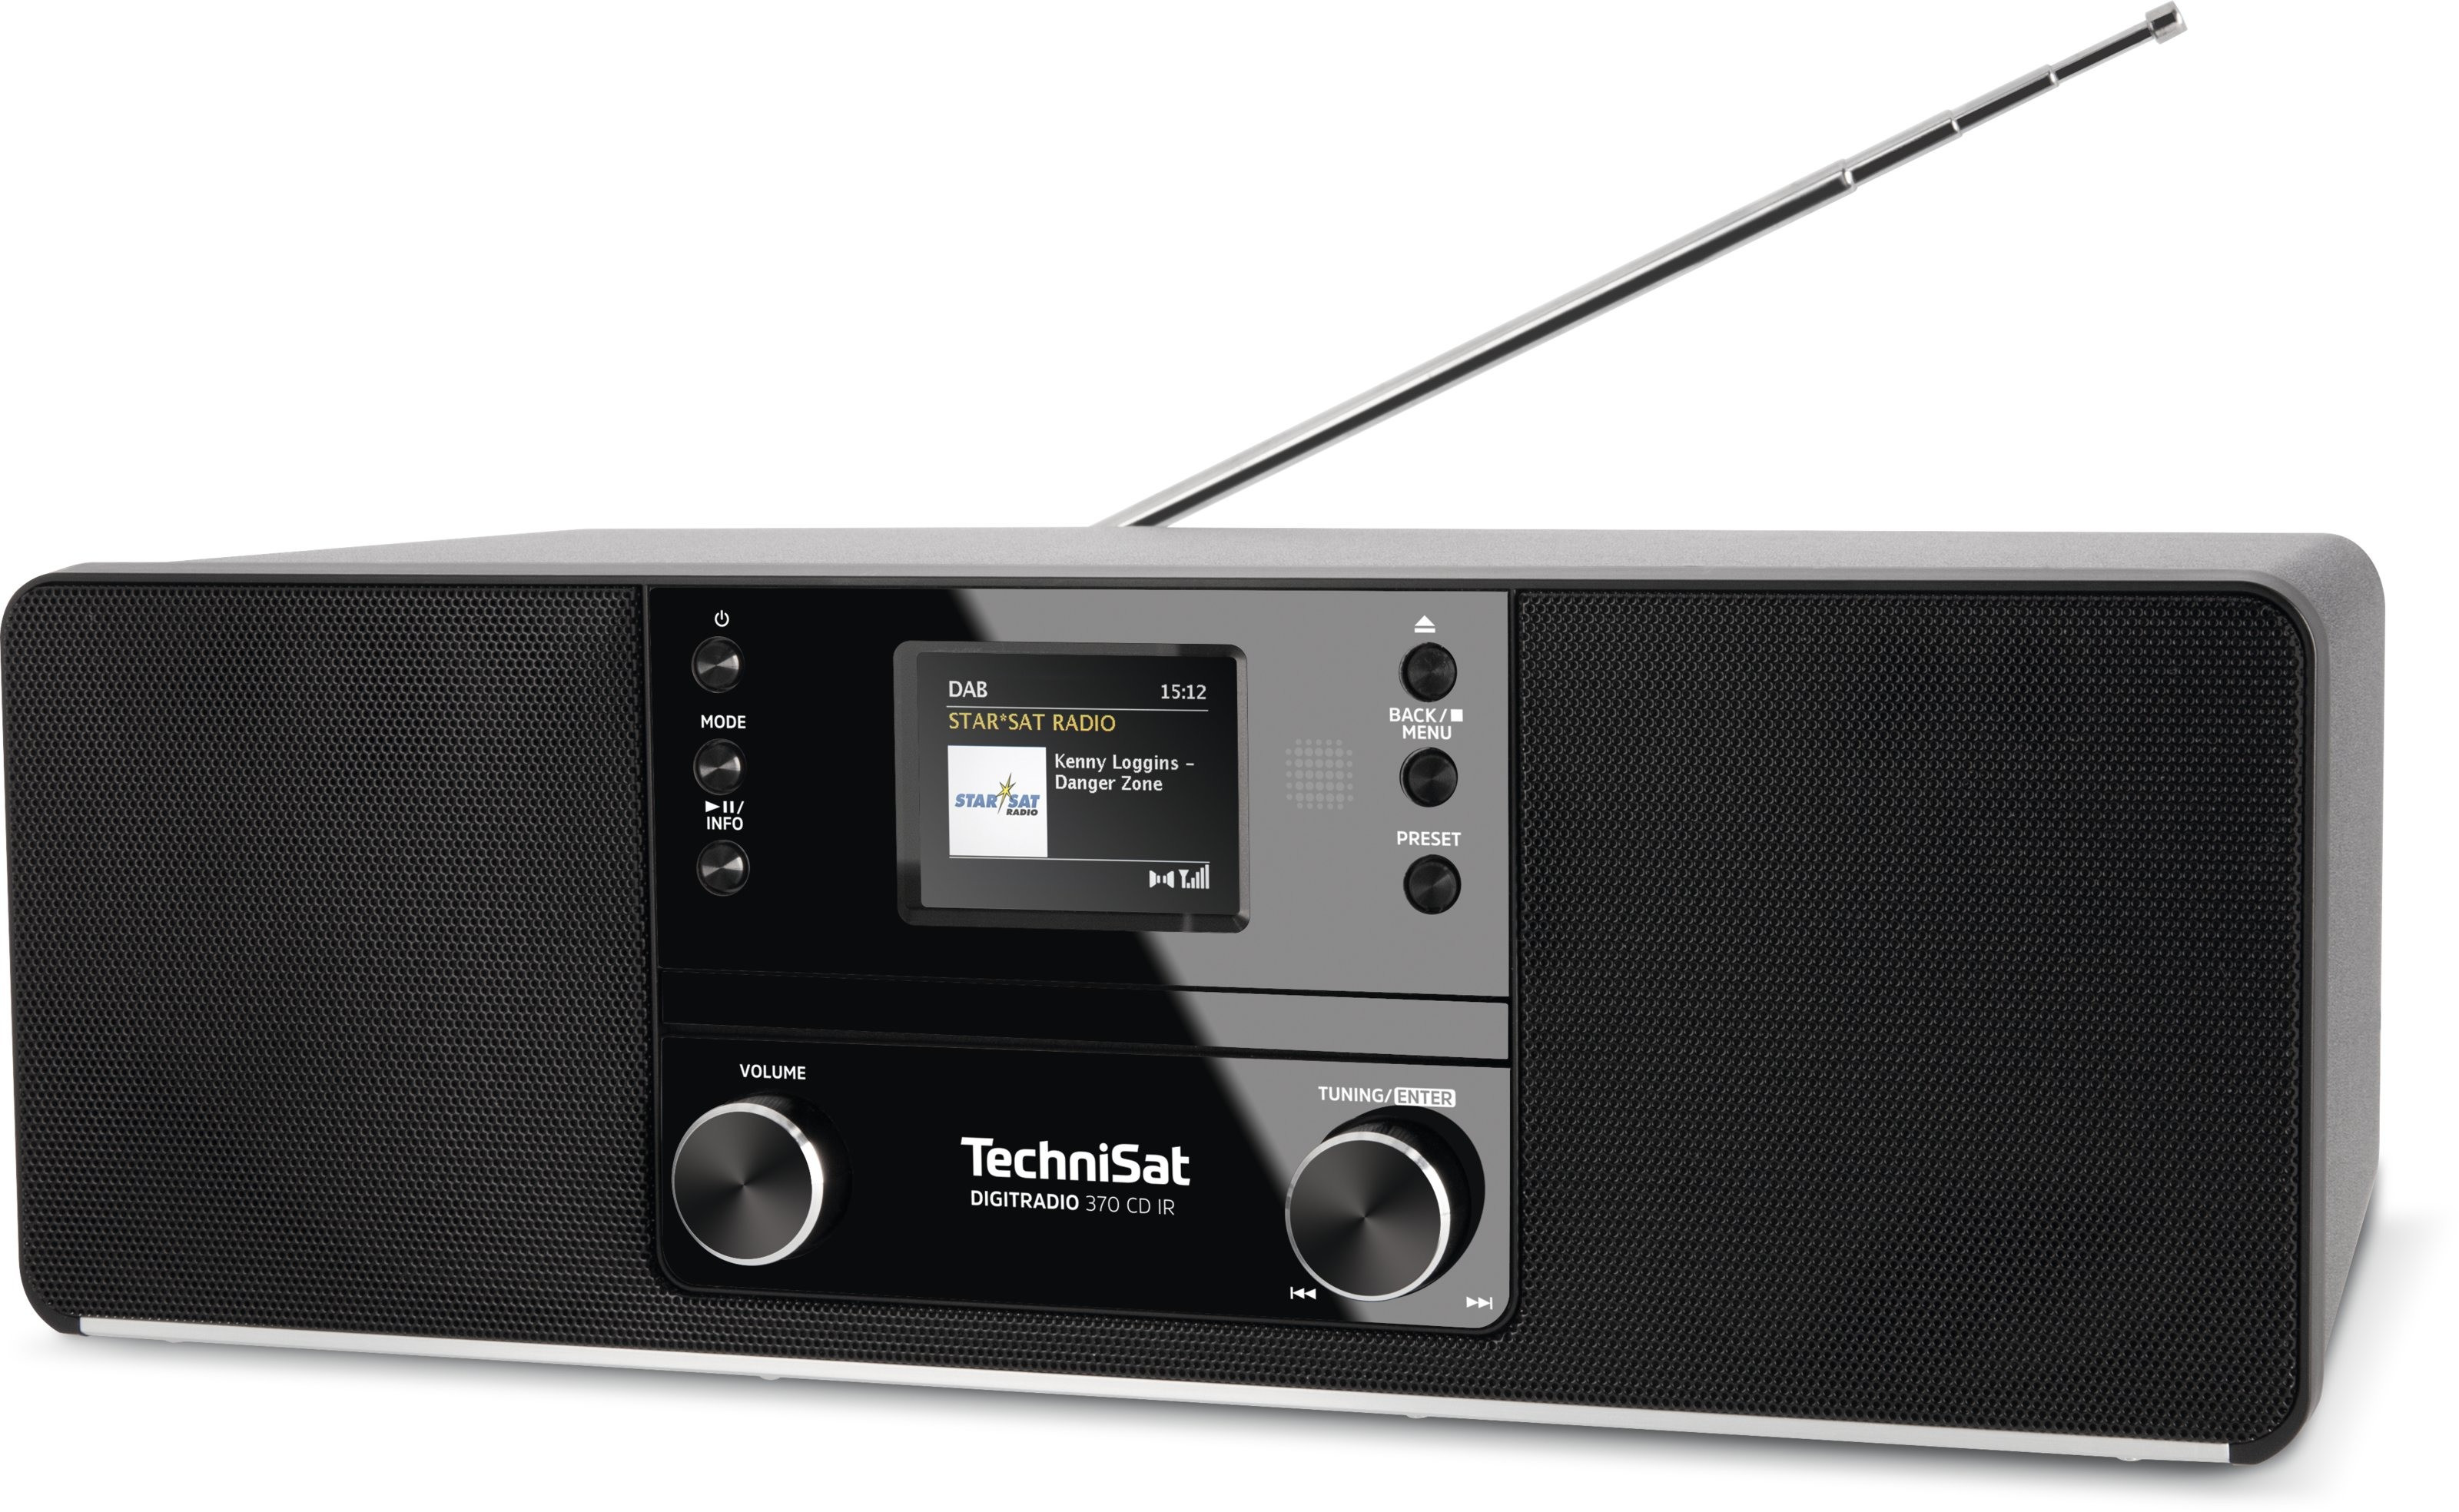 TechniSat Digitradio 370 CD IR DAB radio Zwart